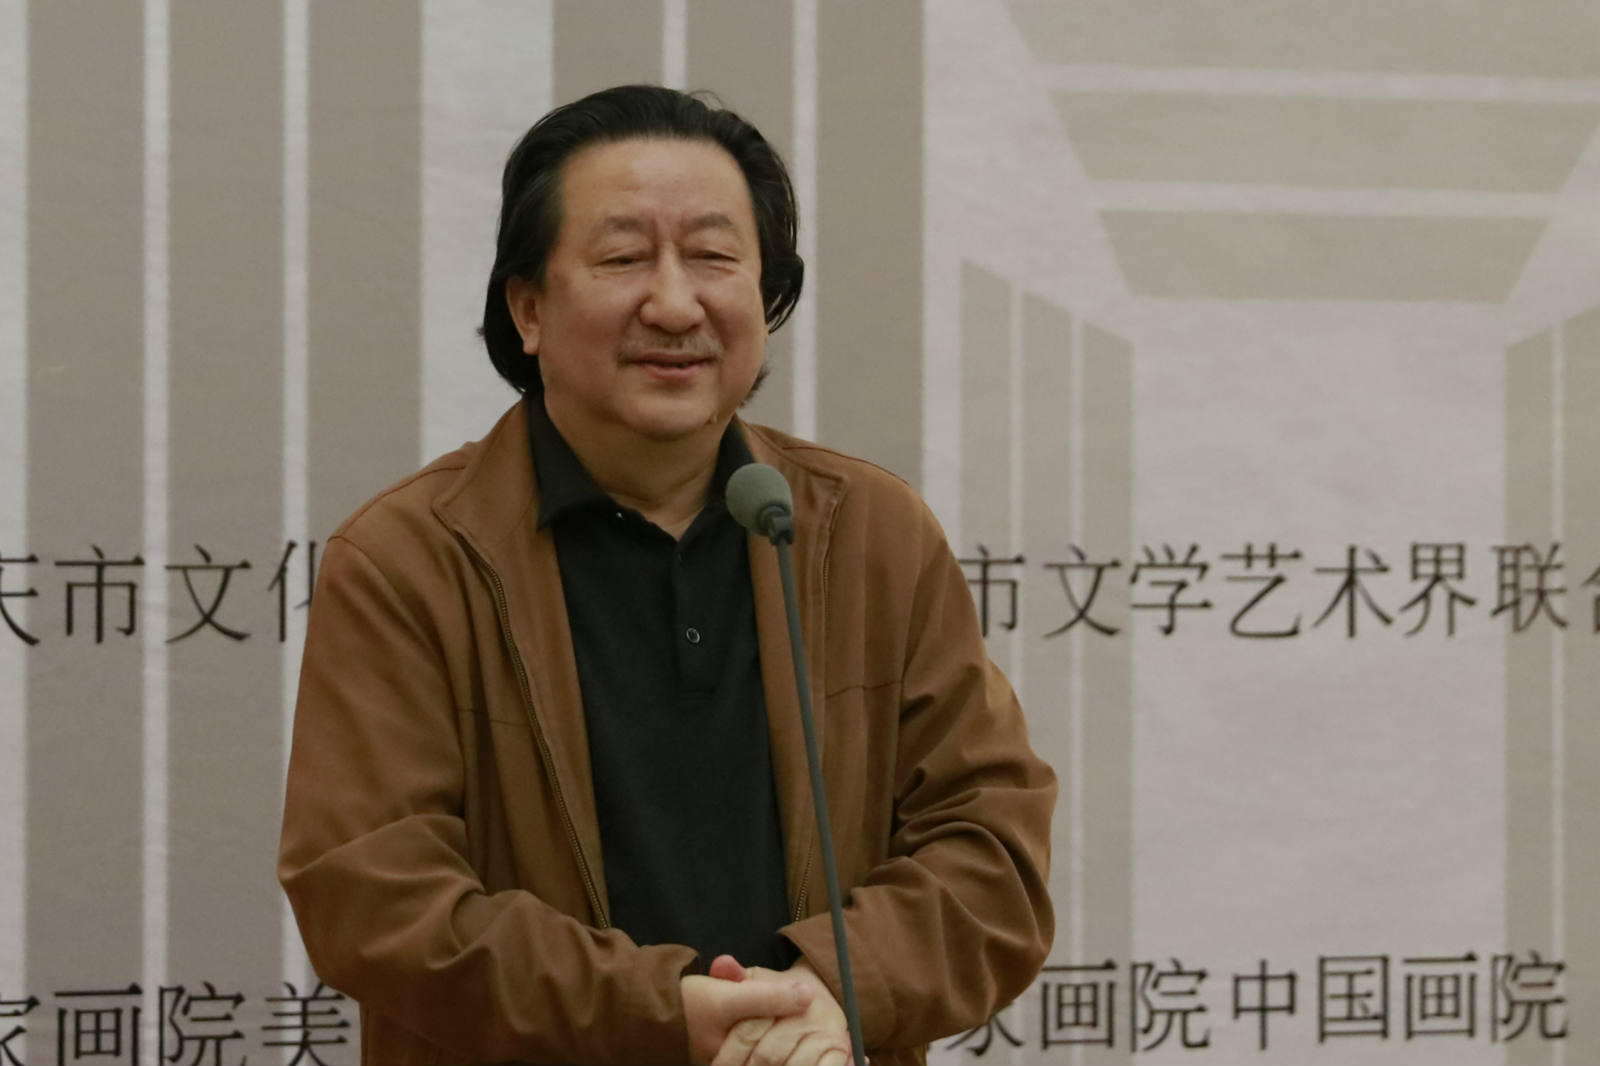 中国国家画院院长、中国美术家协会副主席杨晓阳致辞